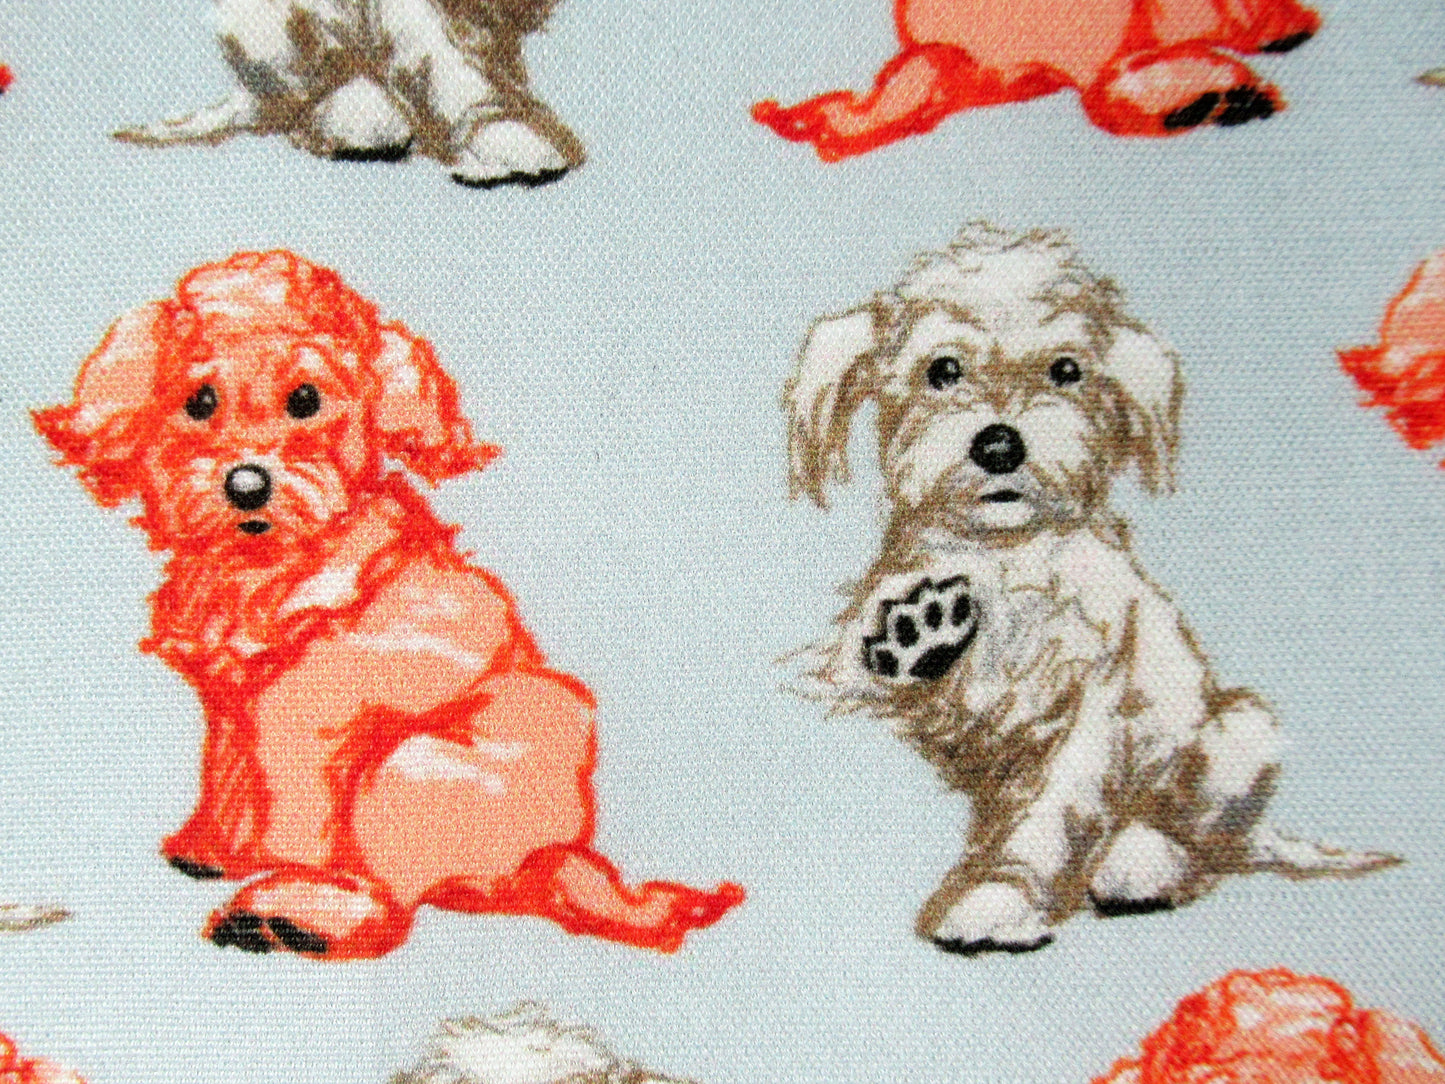 Adorable Maltipoo Dog Fabric